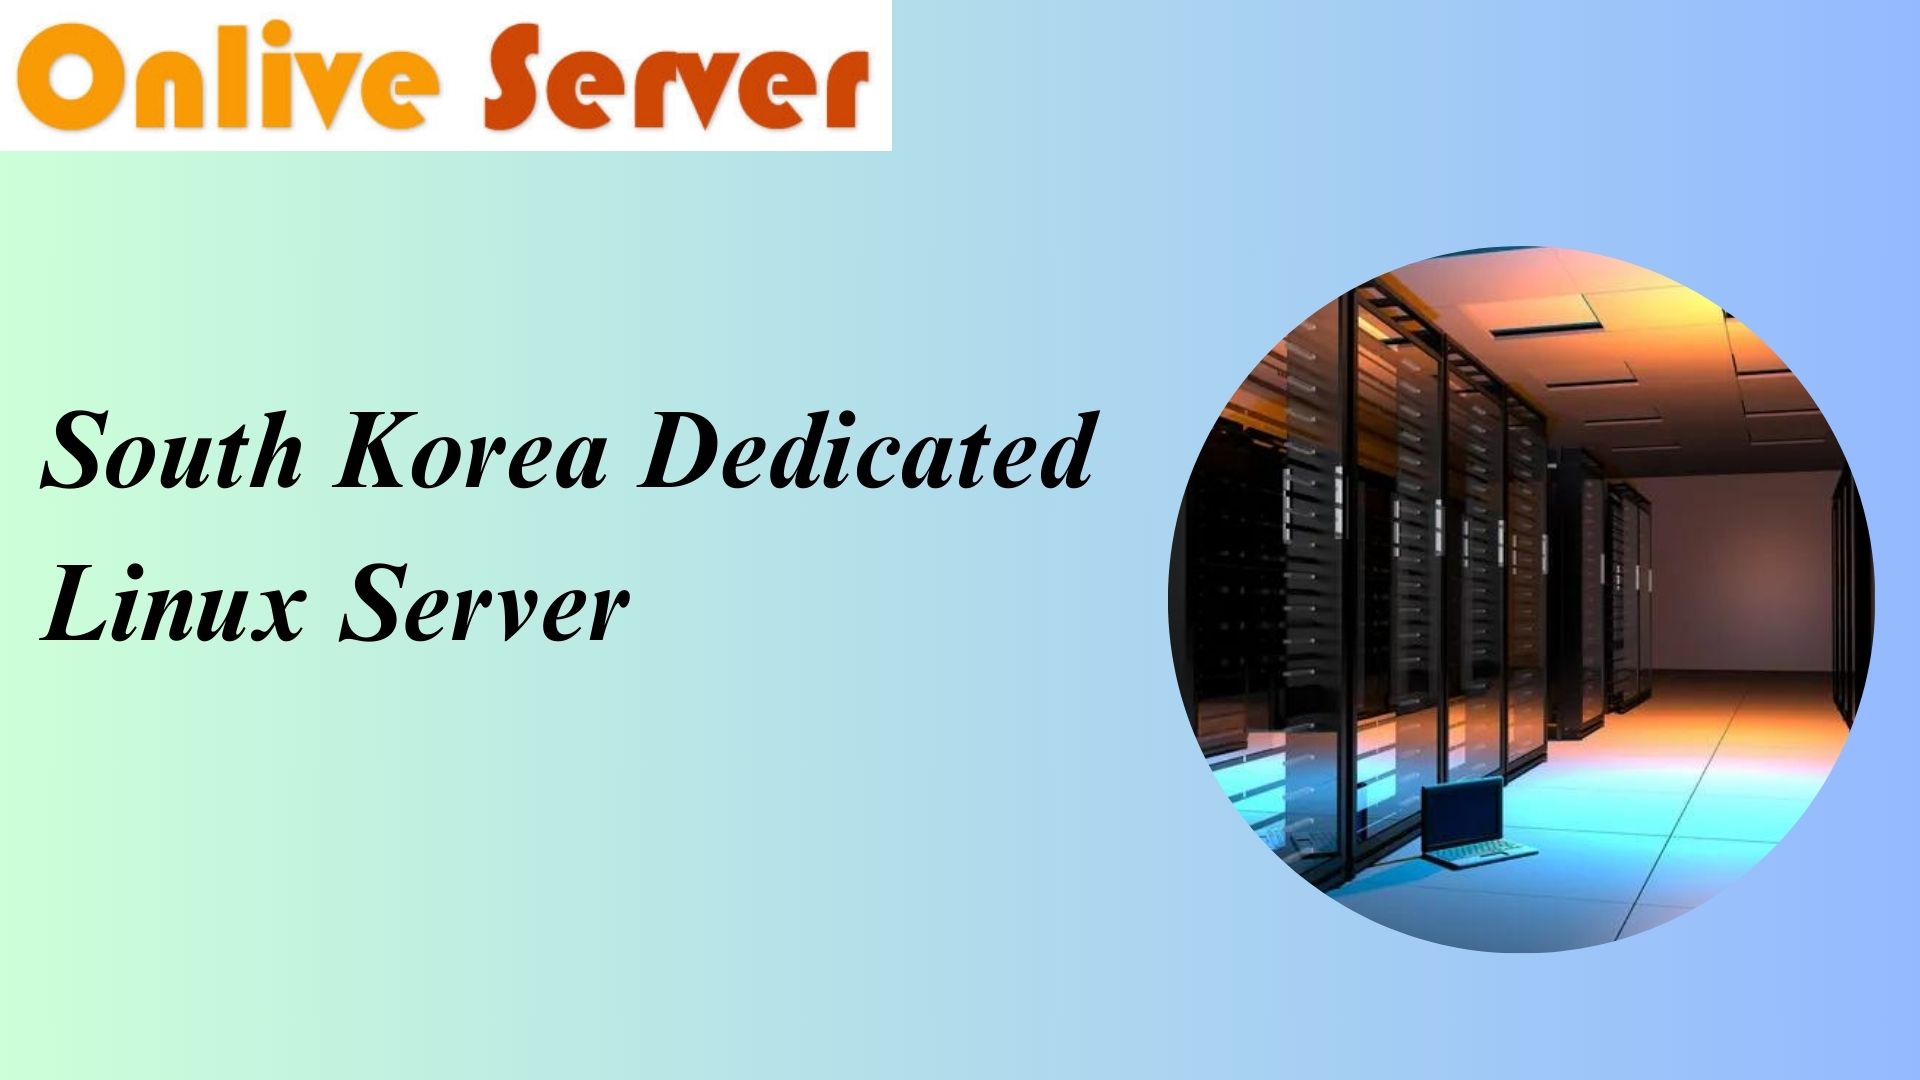 South Korea Dedicated Linux Server